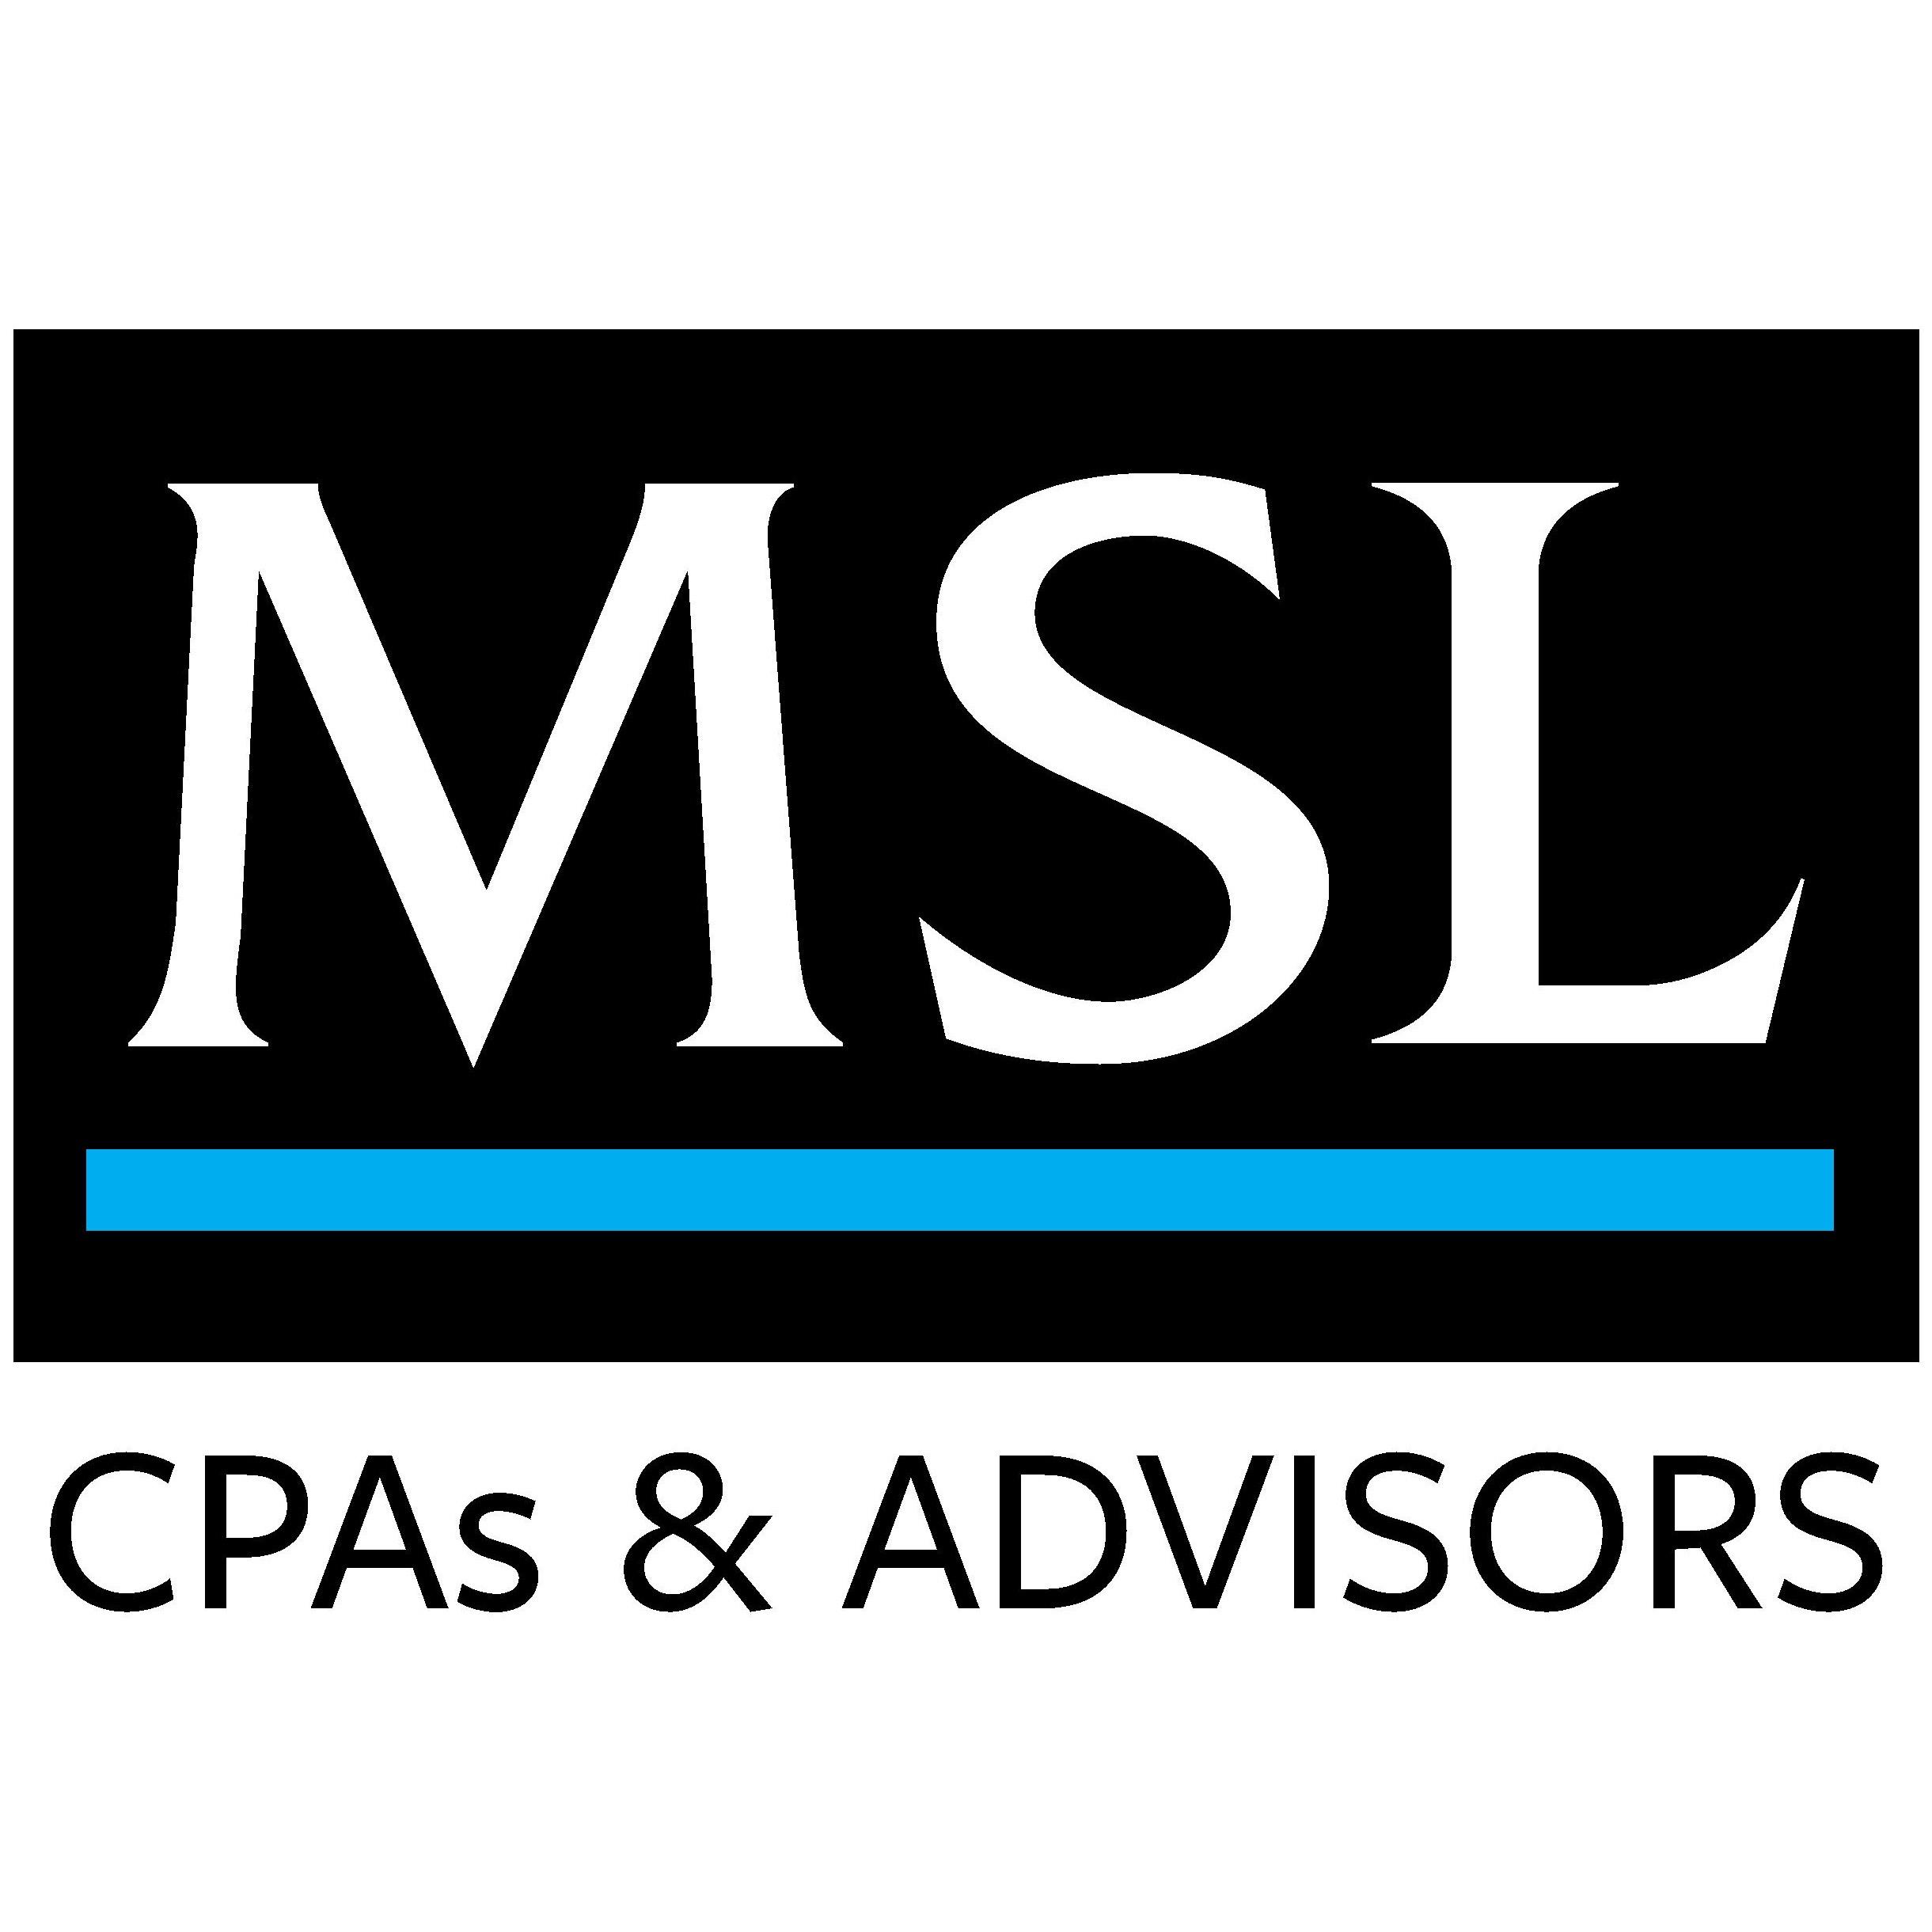 MSL CPAs & Advisors